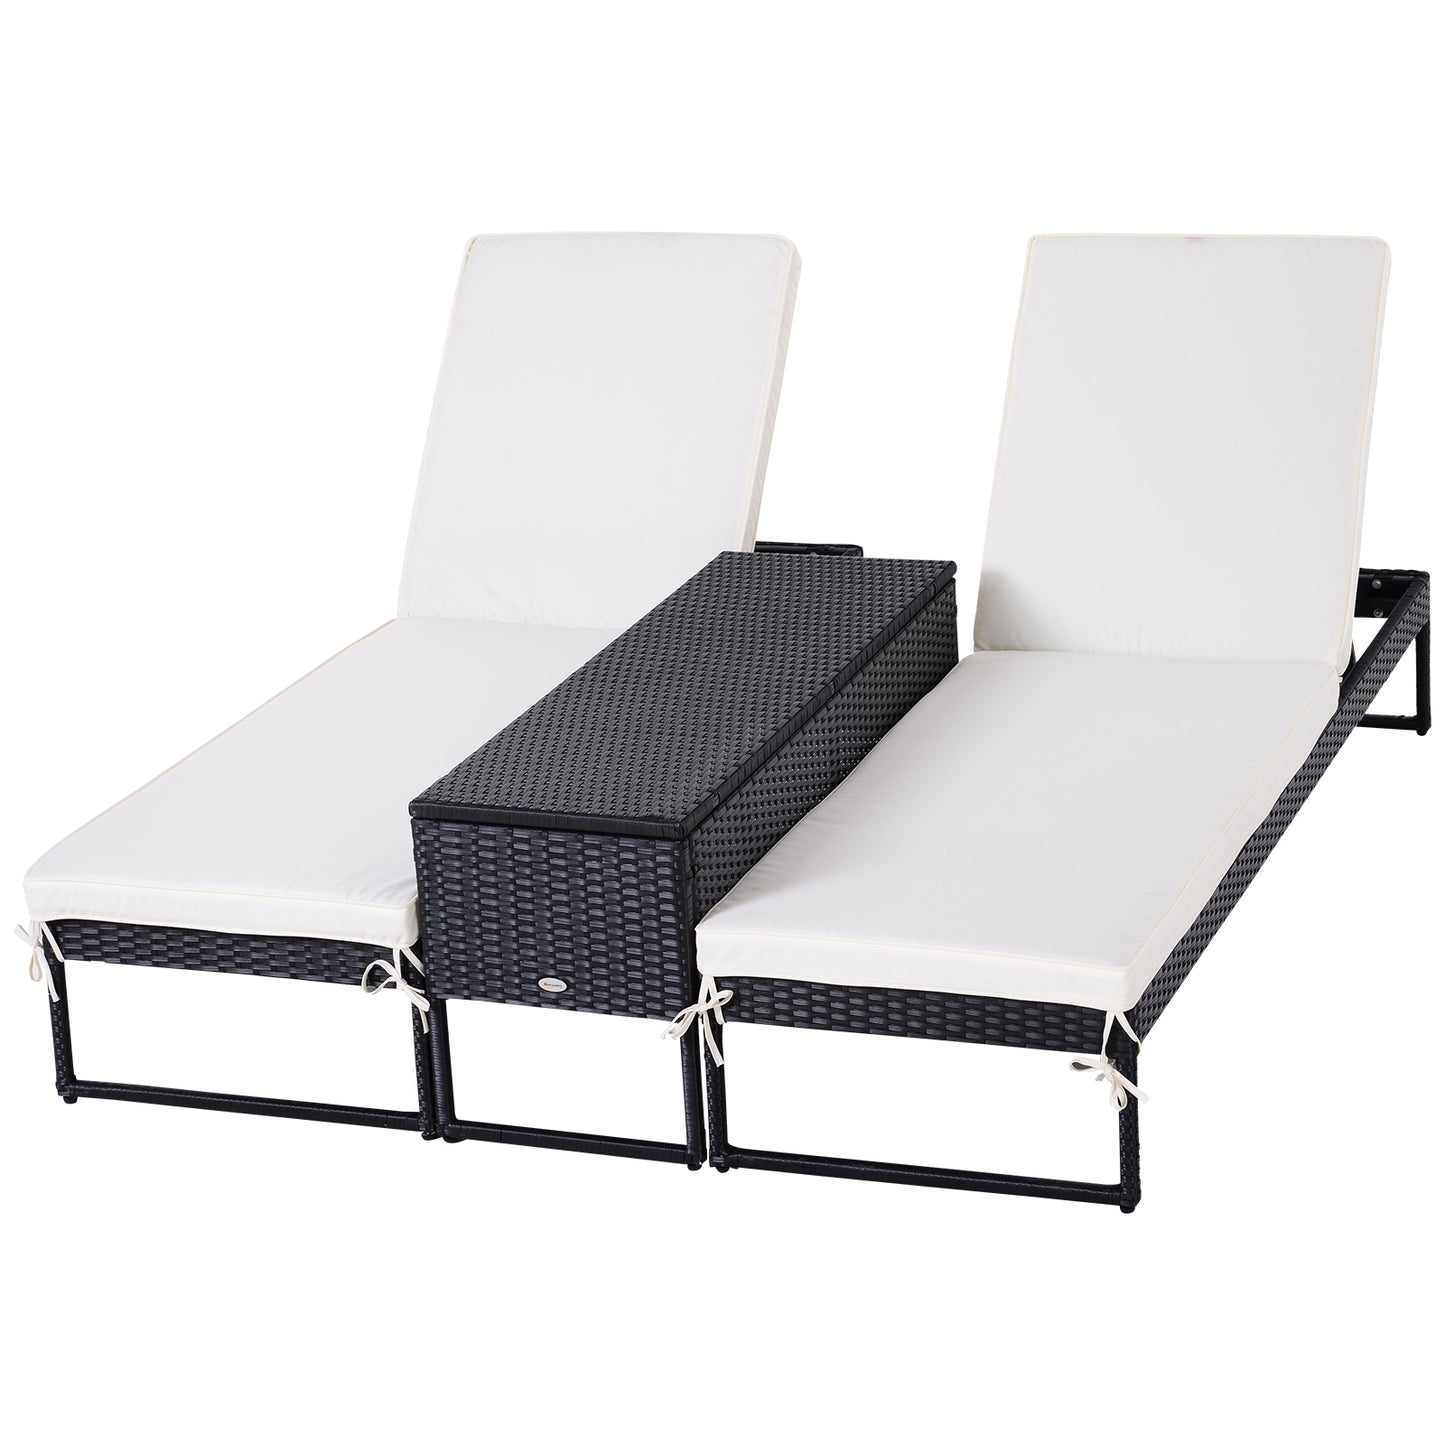 Outsunny PE Rattan 2-Seat Outdoor Garden Sun Lounger Set w/ Table Black